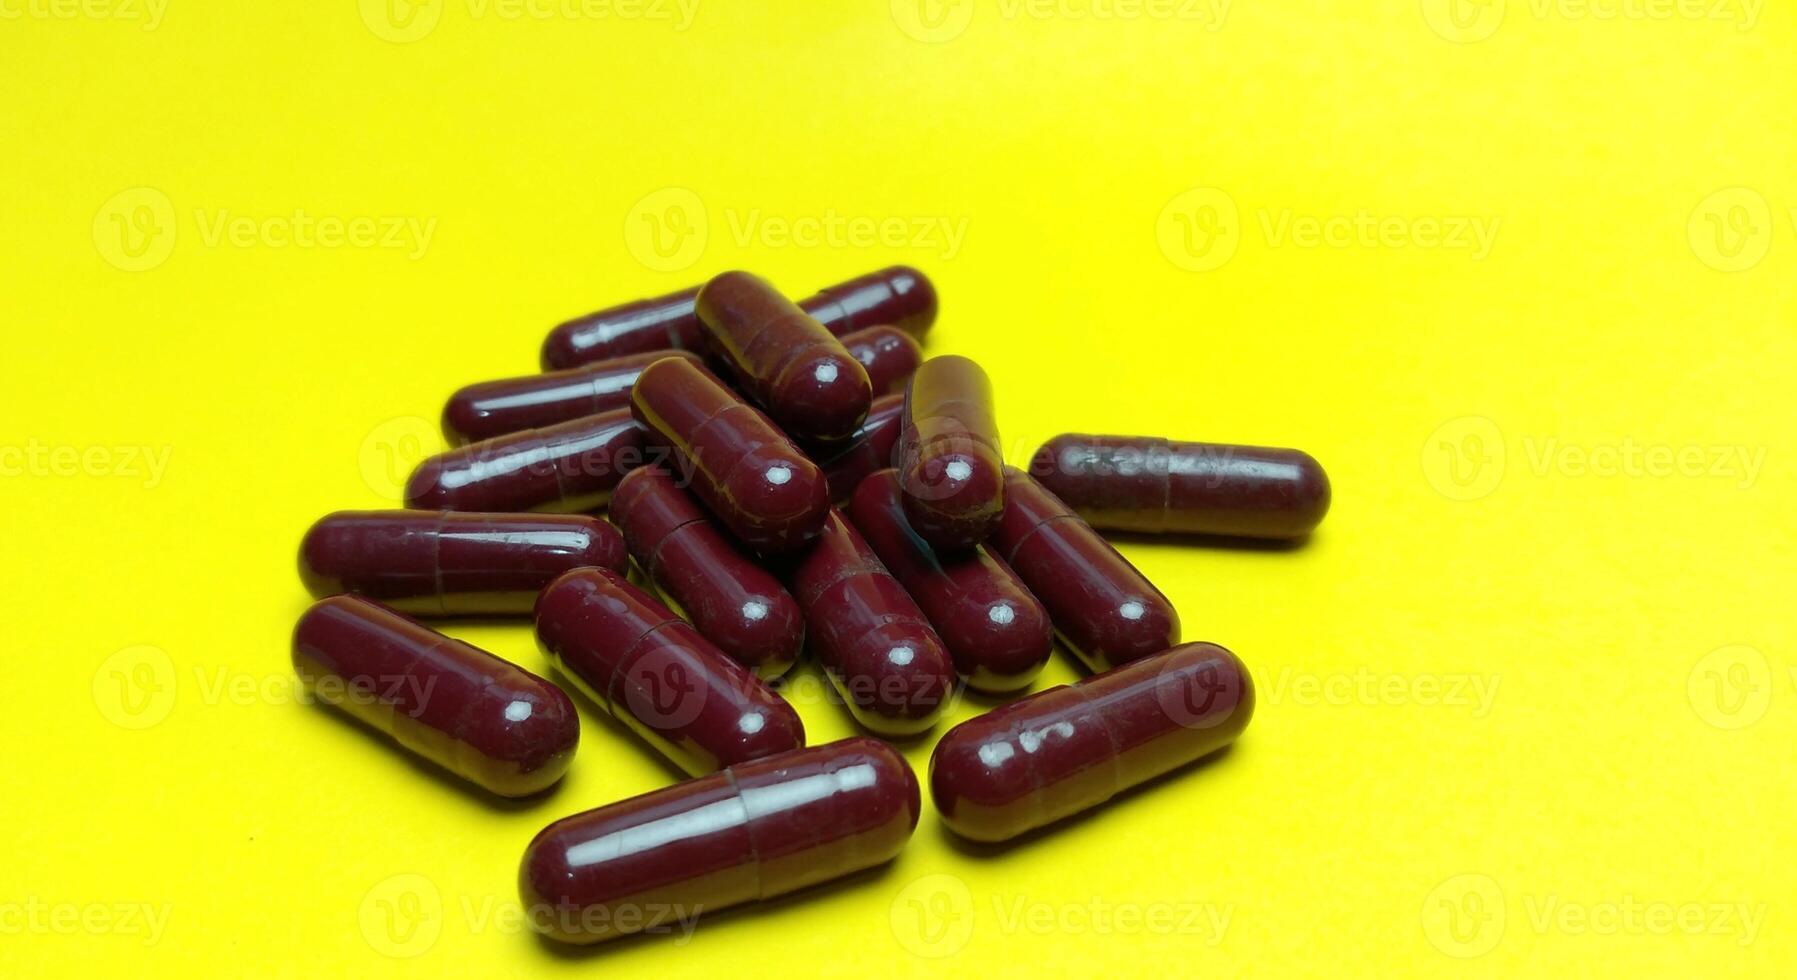 injicerbar piller medicin på en gul bakgrund foto